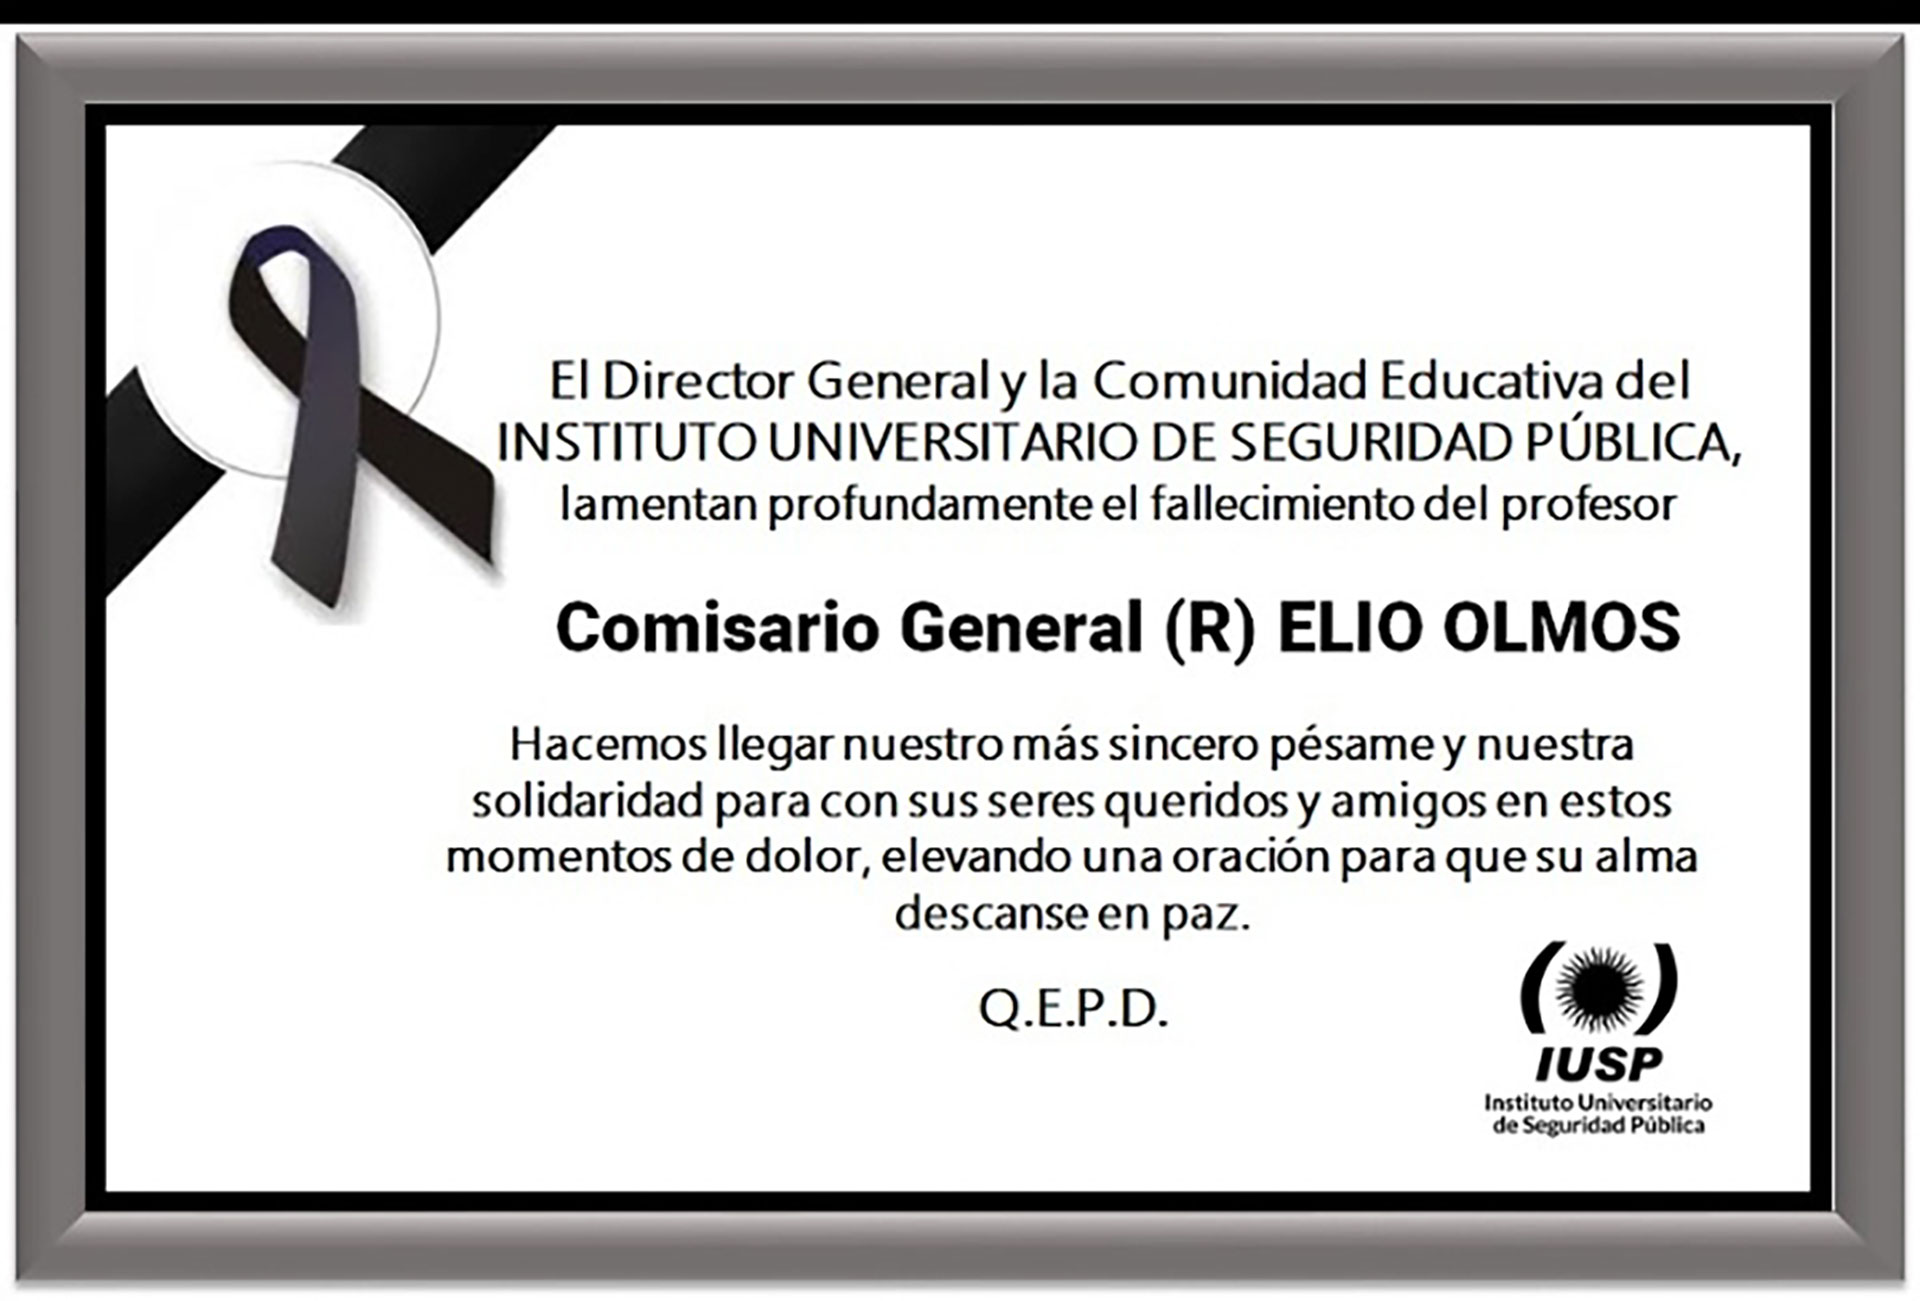 El Instituto Universitario de Seguridad Pública de Mendoza, donde Olmos trabajaba actualmente como profesor de Educación Física, decretó duelo para este lunes